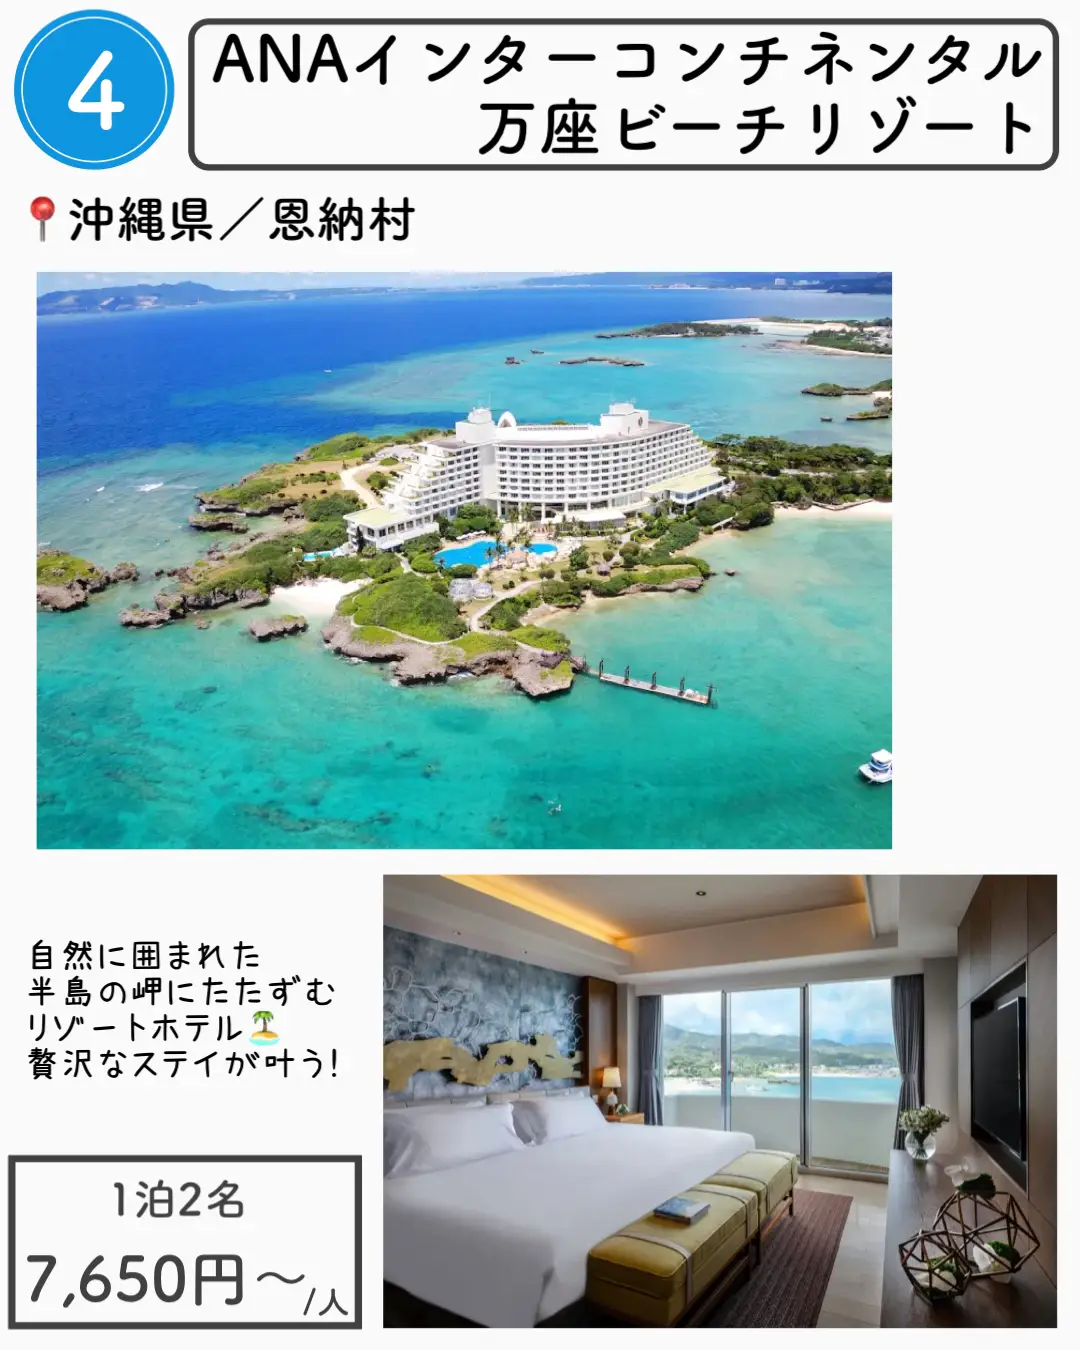 【沖縄】1万円以下で泊まれる沖縄ホテル7選の画像 (4枚目)